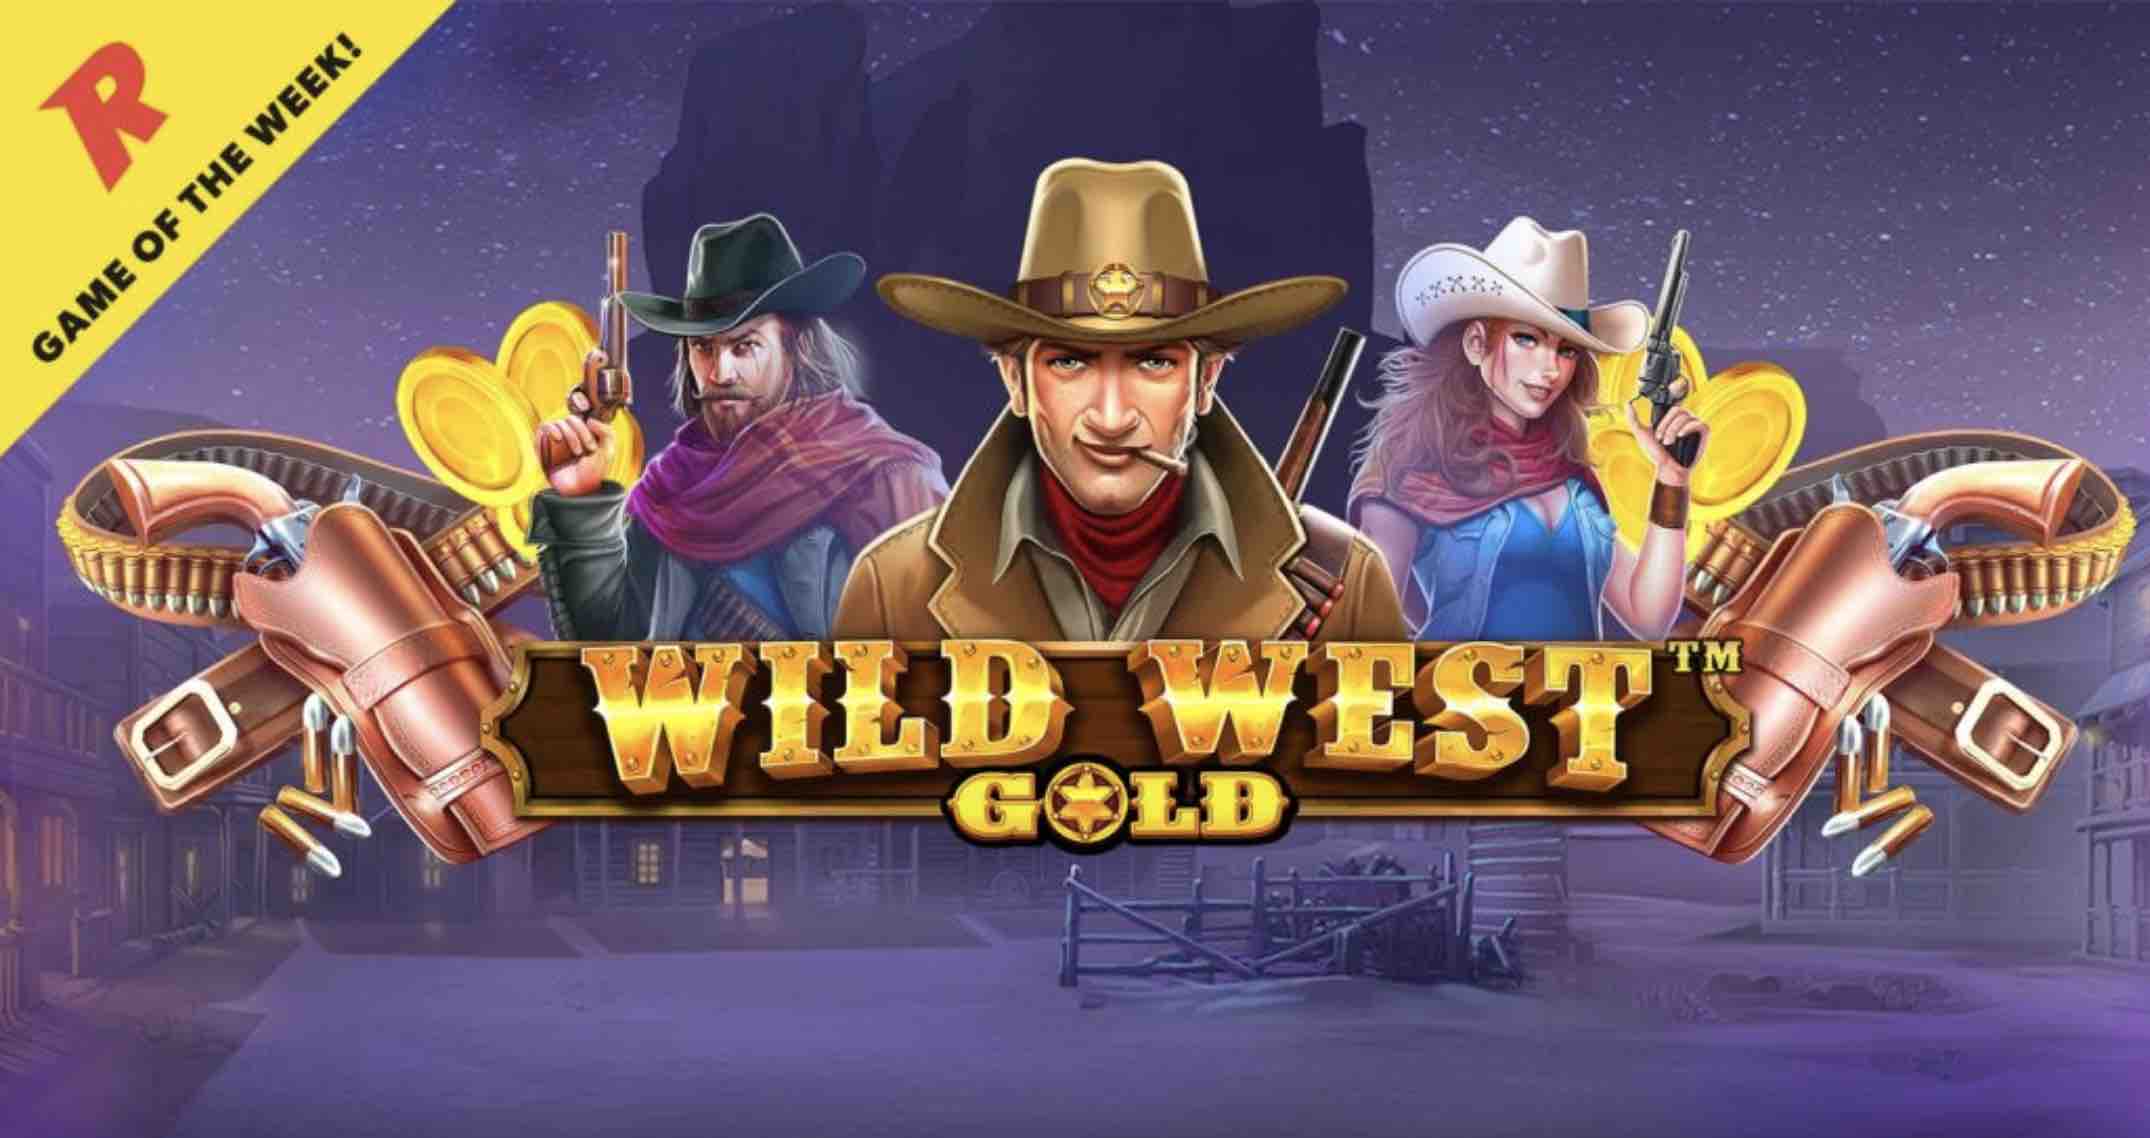 Wild west gold slot